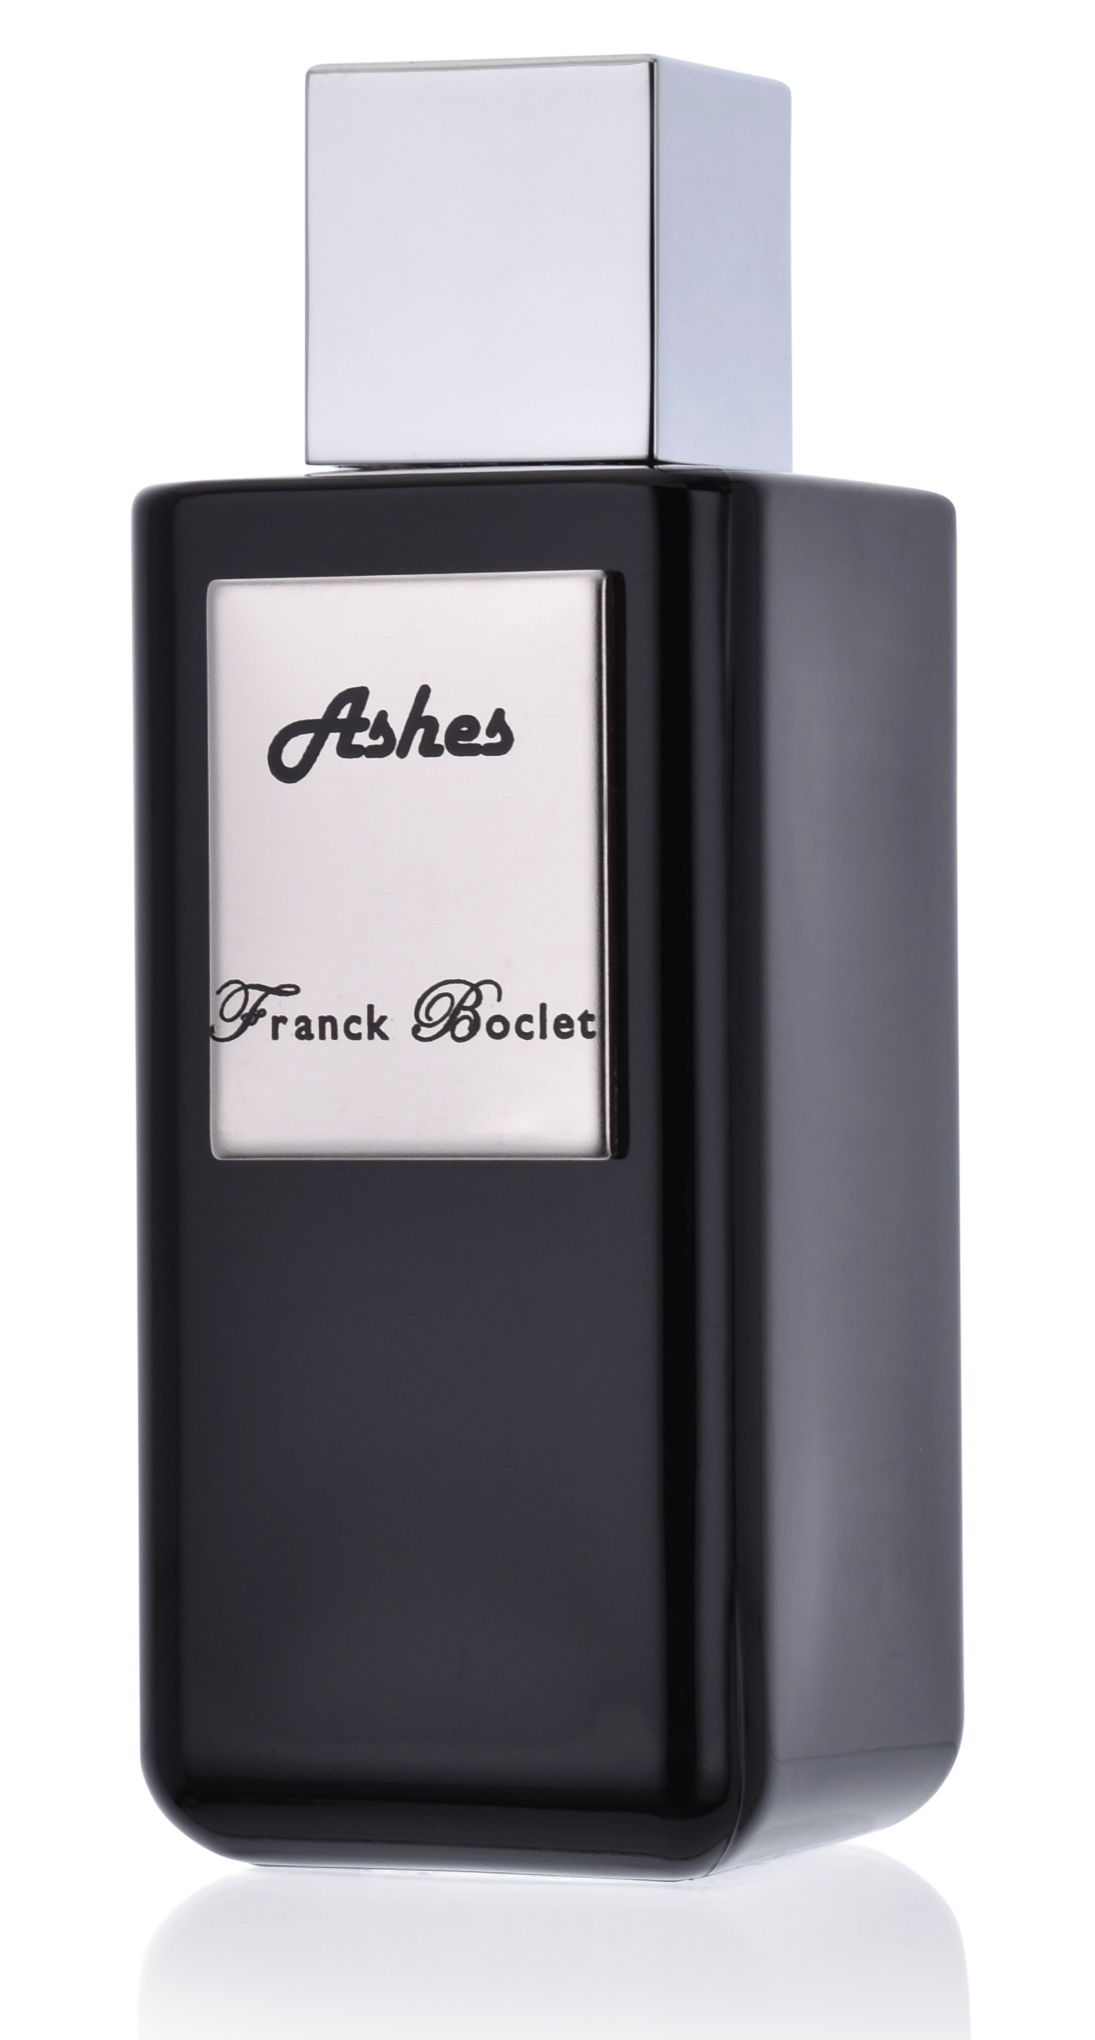 Franck Boclet Ashes 5 ml Extrait de Parfum Abfüllung 